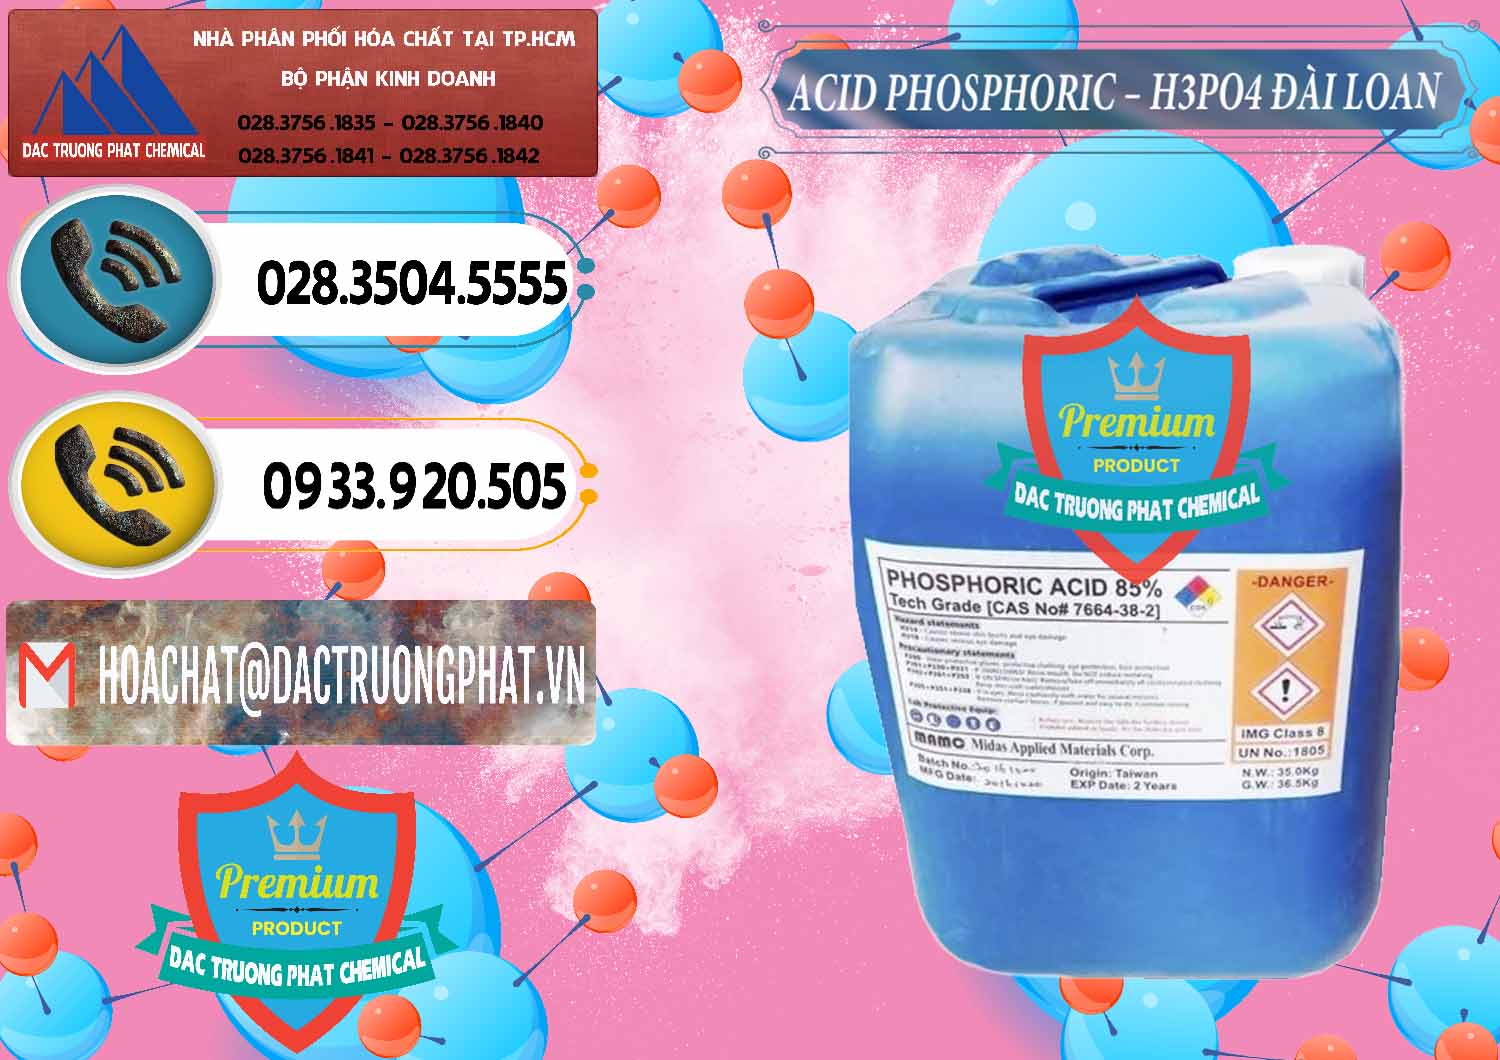 Đơn vị bán & cung ứng Axit Phosphoric - Acid Phosphoric H3PO4 85% Đài Loan Taiwan - 0351 - Đơn vị bán _ cung cấp hóa chất tại TP.HCM - hoachatdetnhuom.vn